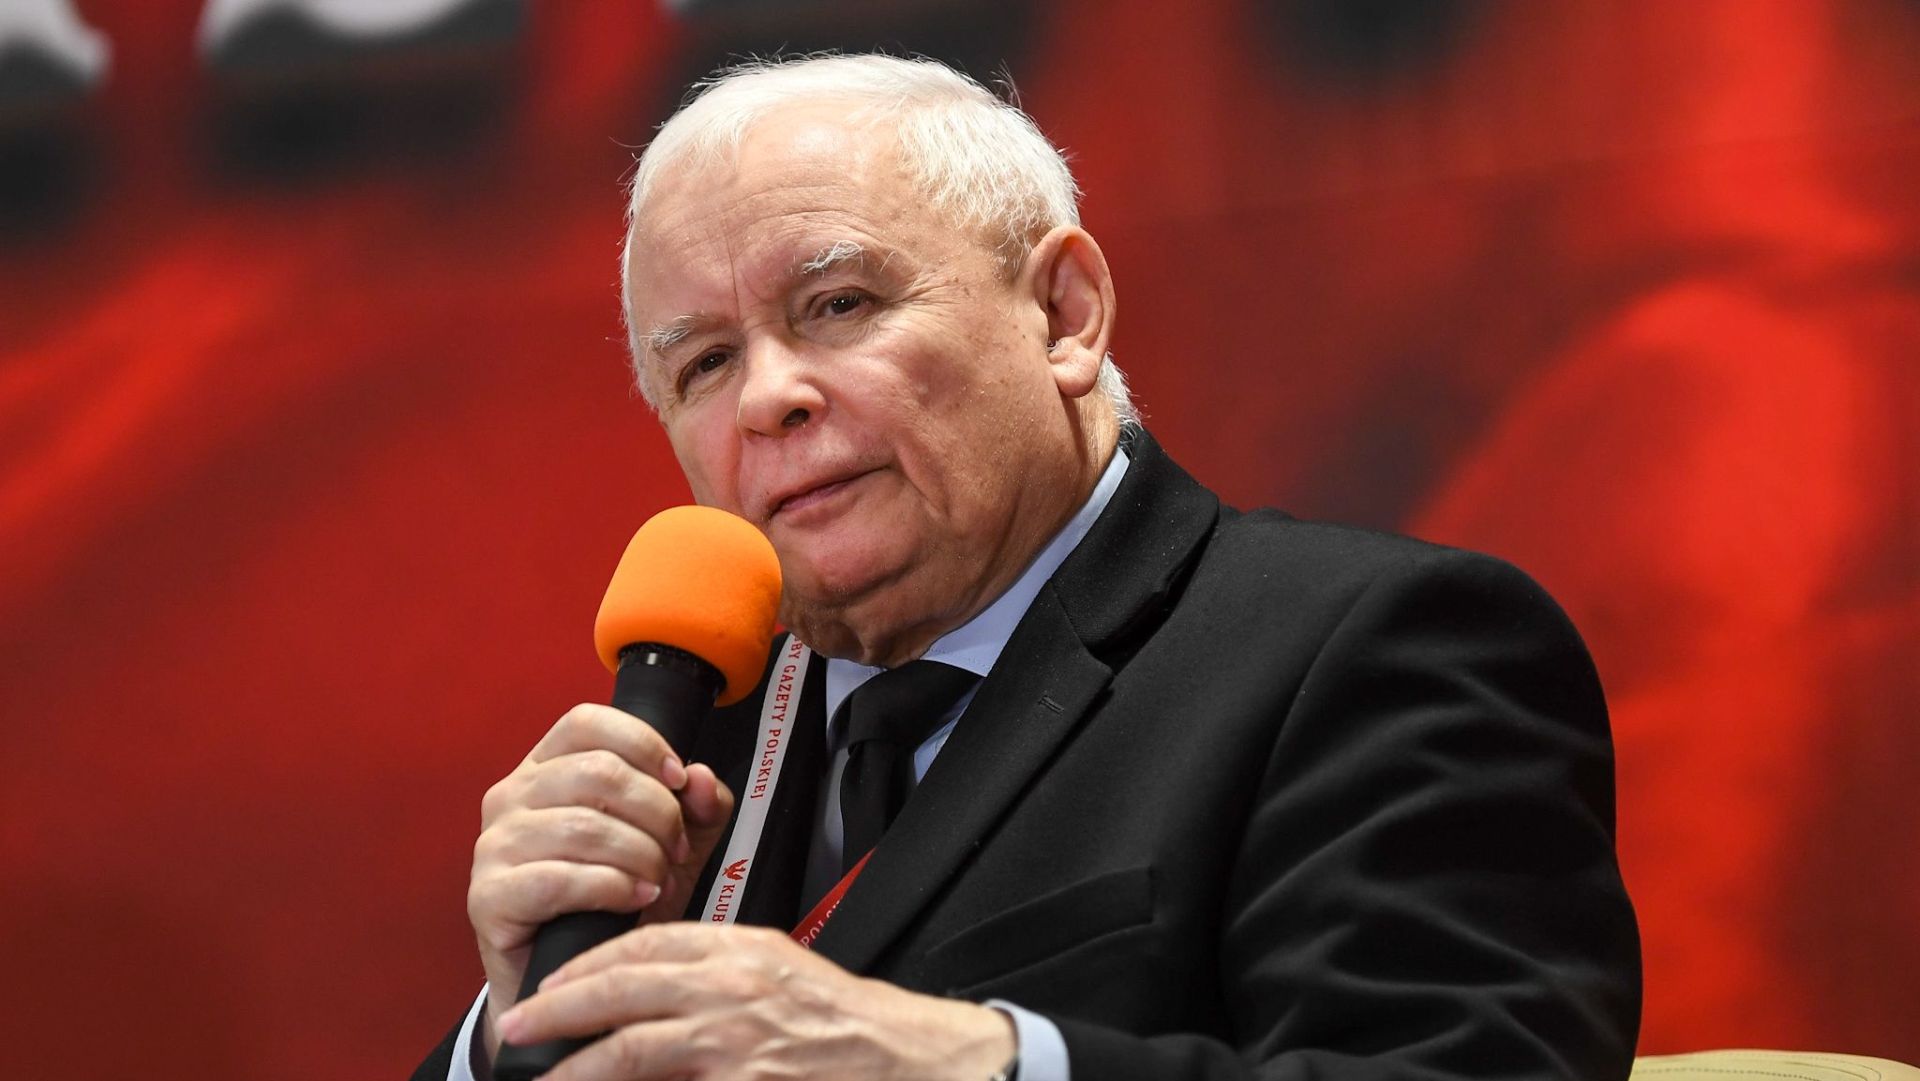 Były wicepremier i przewodniczący komitetu do spraw bezpieczeństwa narodowego, Jarosław Kaczyński, złoży dziś zeznania przed sejmową komisją śledczą do spraw Pegasusa.